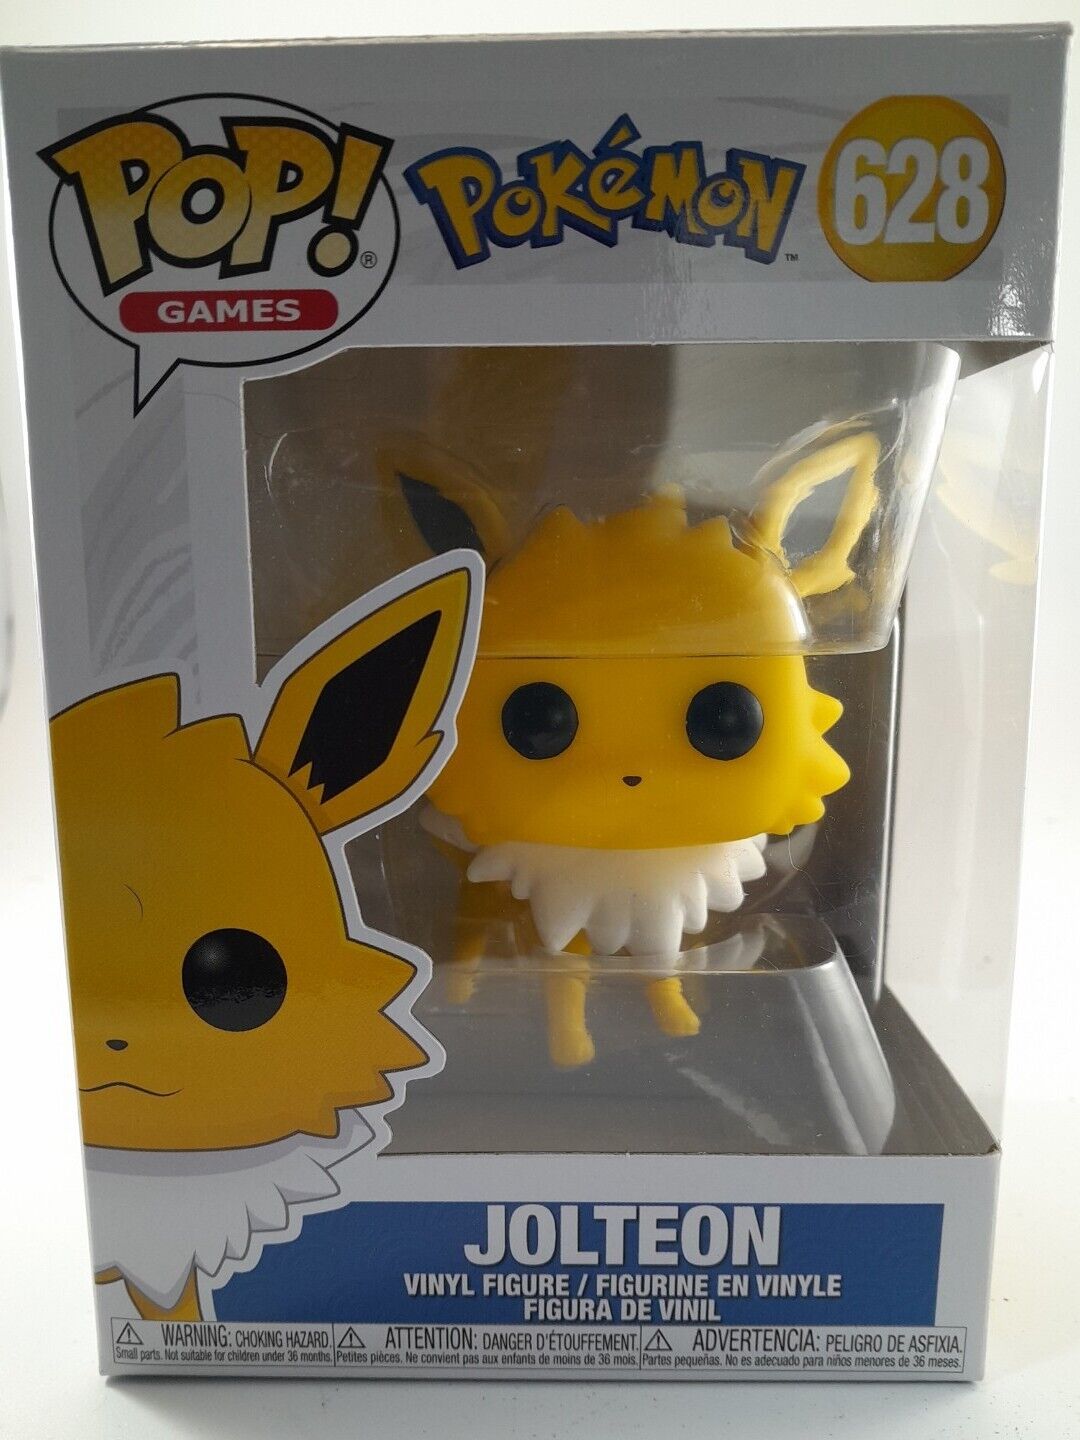 Jolteon – Pokémon – 628.    47